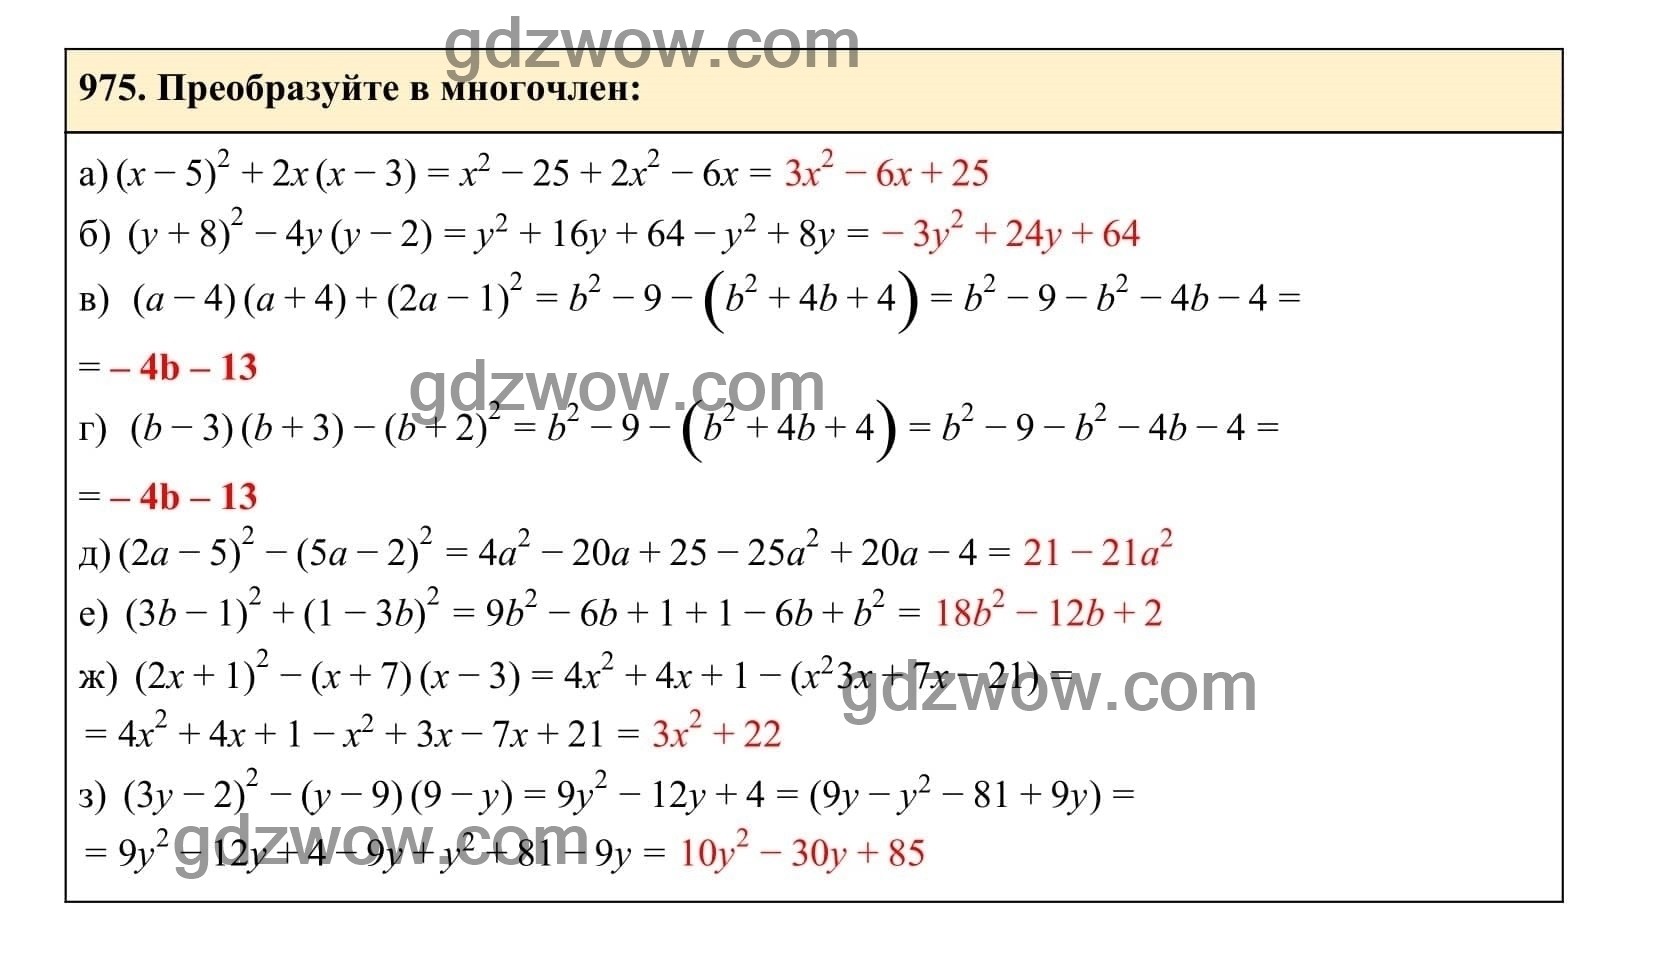 Упражнение 975 - ГДЗ по Алгебре 7 класс Учебник Макарычев (решебник) - GDZwow